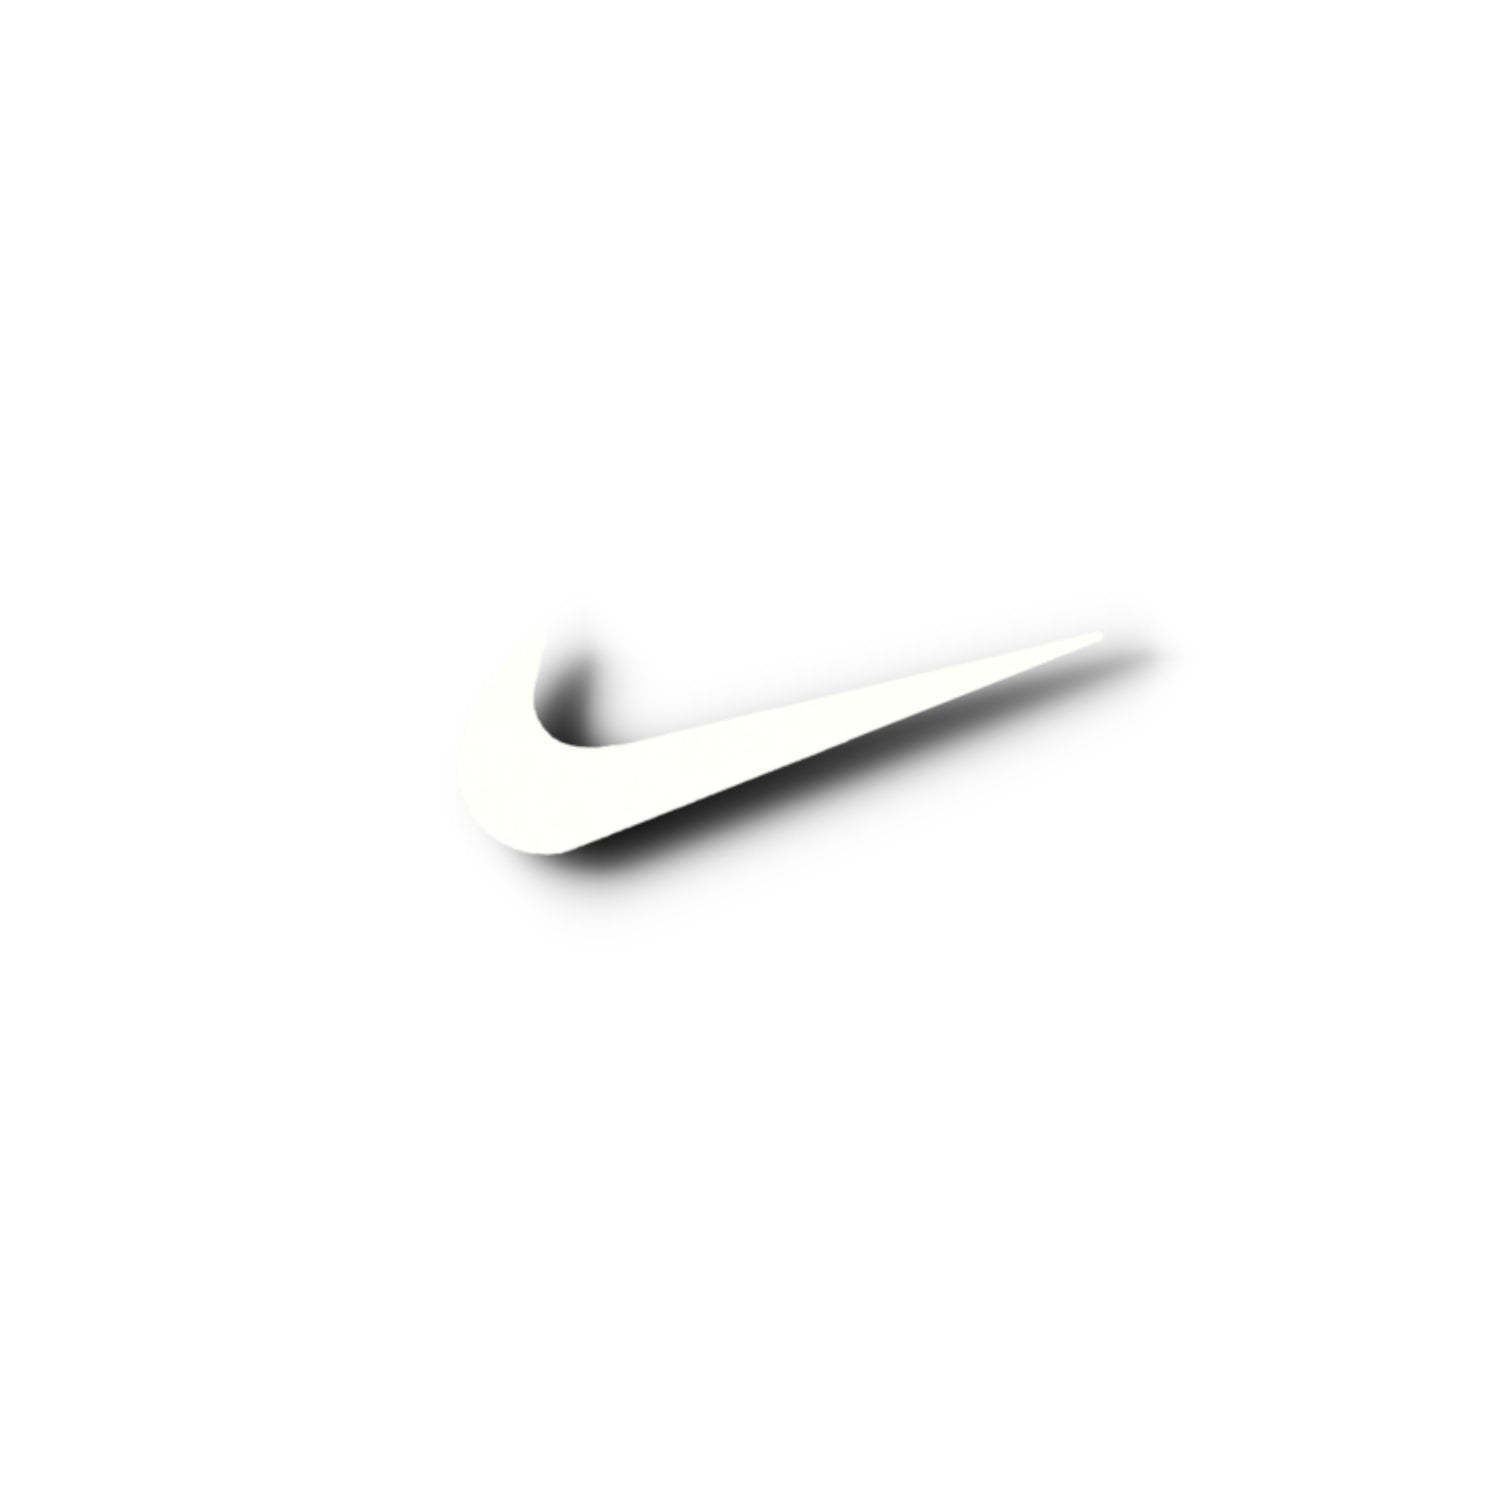 Trong hình ảnh này, bạn sẽ được chiêm ngưỡng logo Nike Vintage đầy cổ điển, tạo nên sức hút đặc biệt và độc đáo từ thương hiệu thể thao hàng đầu thế giới này. Hãy tìm hiểu và khám phá vẻ đẹp cổ điển của Nike qua hình ảnh này!